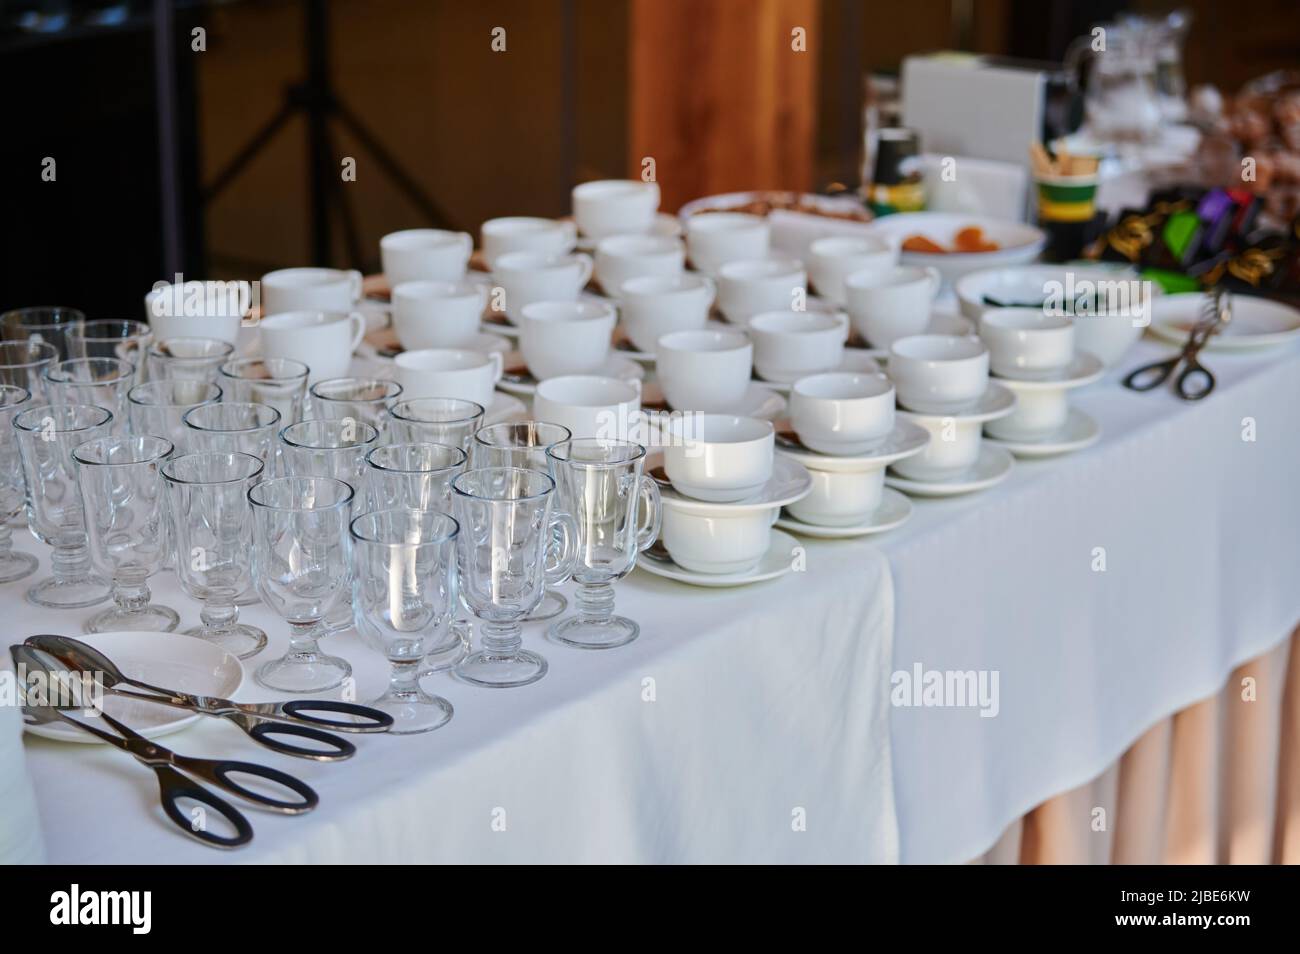 Geschirr und Kaffeepausen, Tassen für Kaffee und Tee für Catering für die Aufnahme von Gästen bei einer Veranstaltung in einem Restaurant Stockfoto